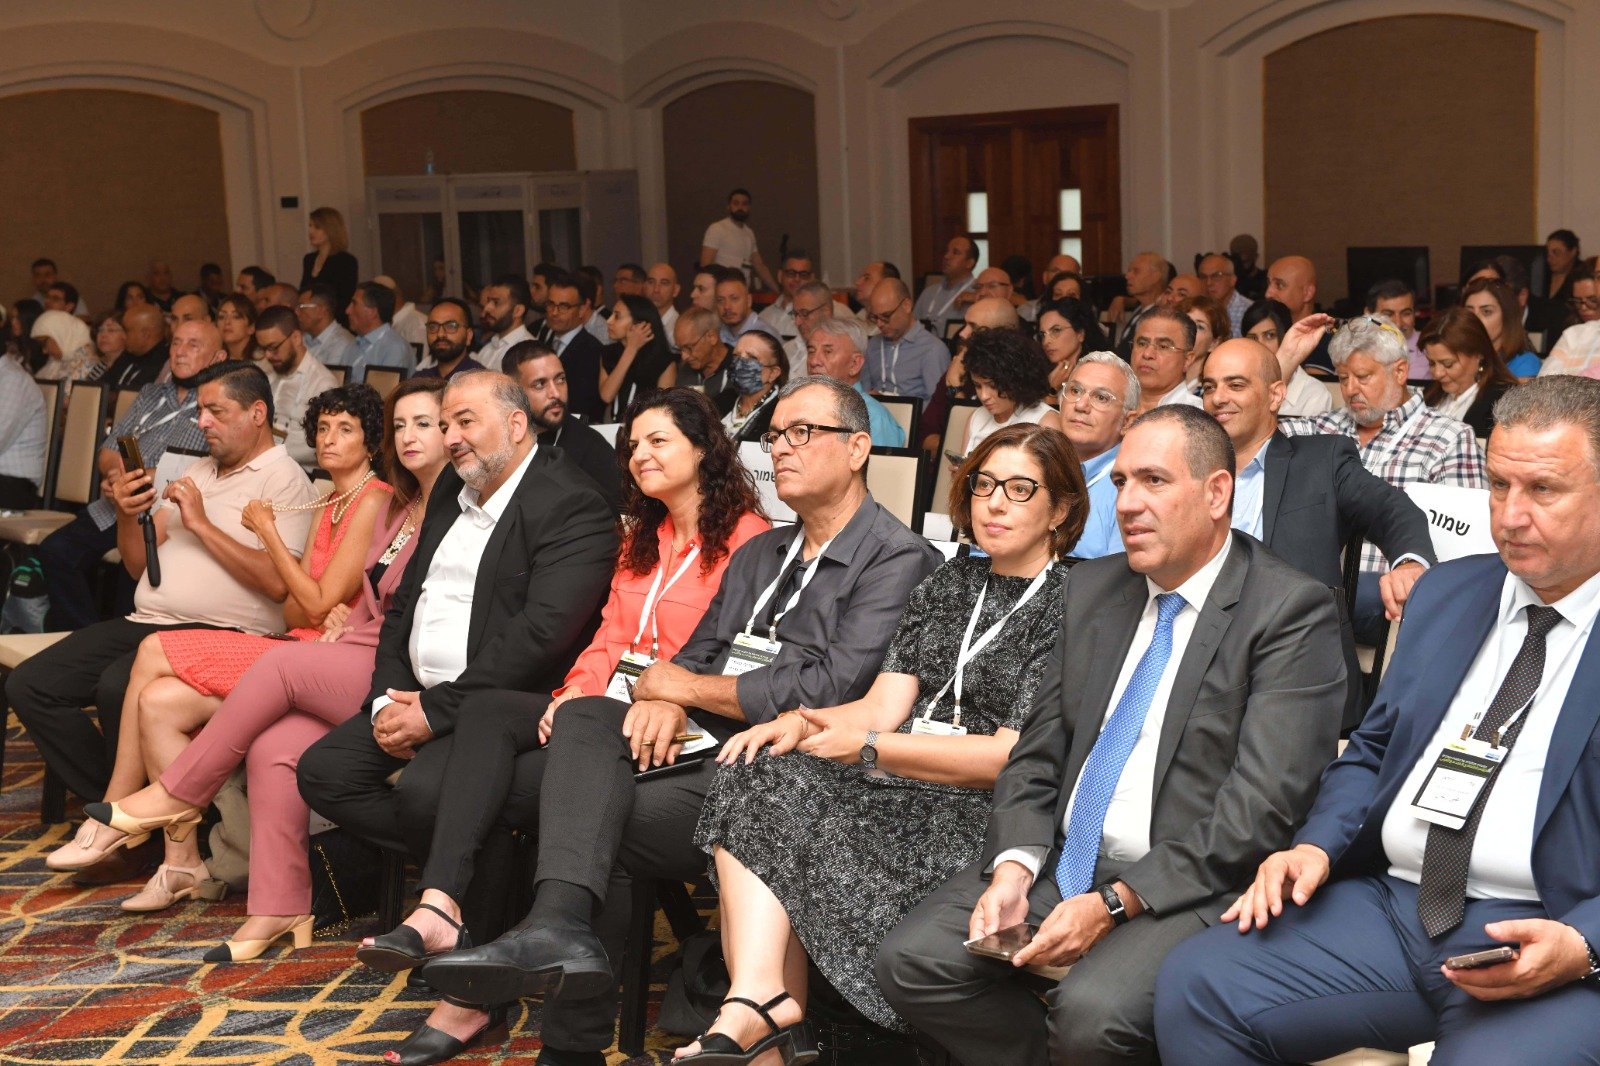 المؤتمر الاقتصادي للمجتمع العربي "بنك لئومي" بنسخته الخامسة يحقق نجاحًا لافتًا-1